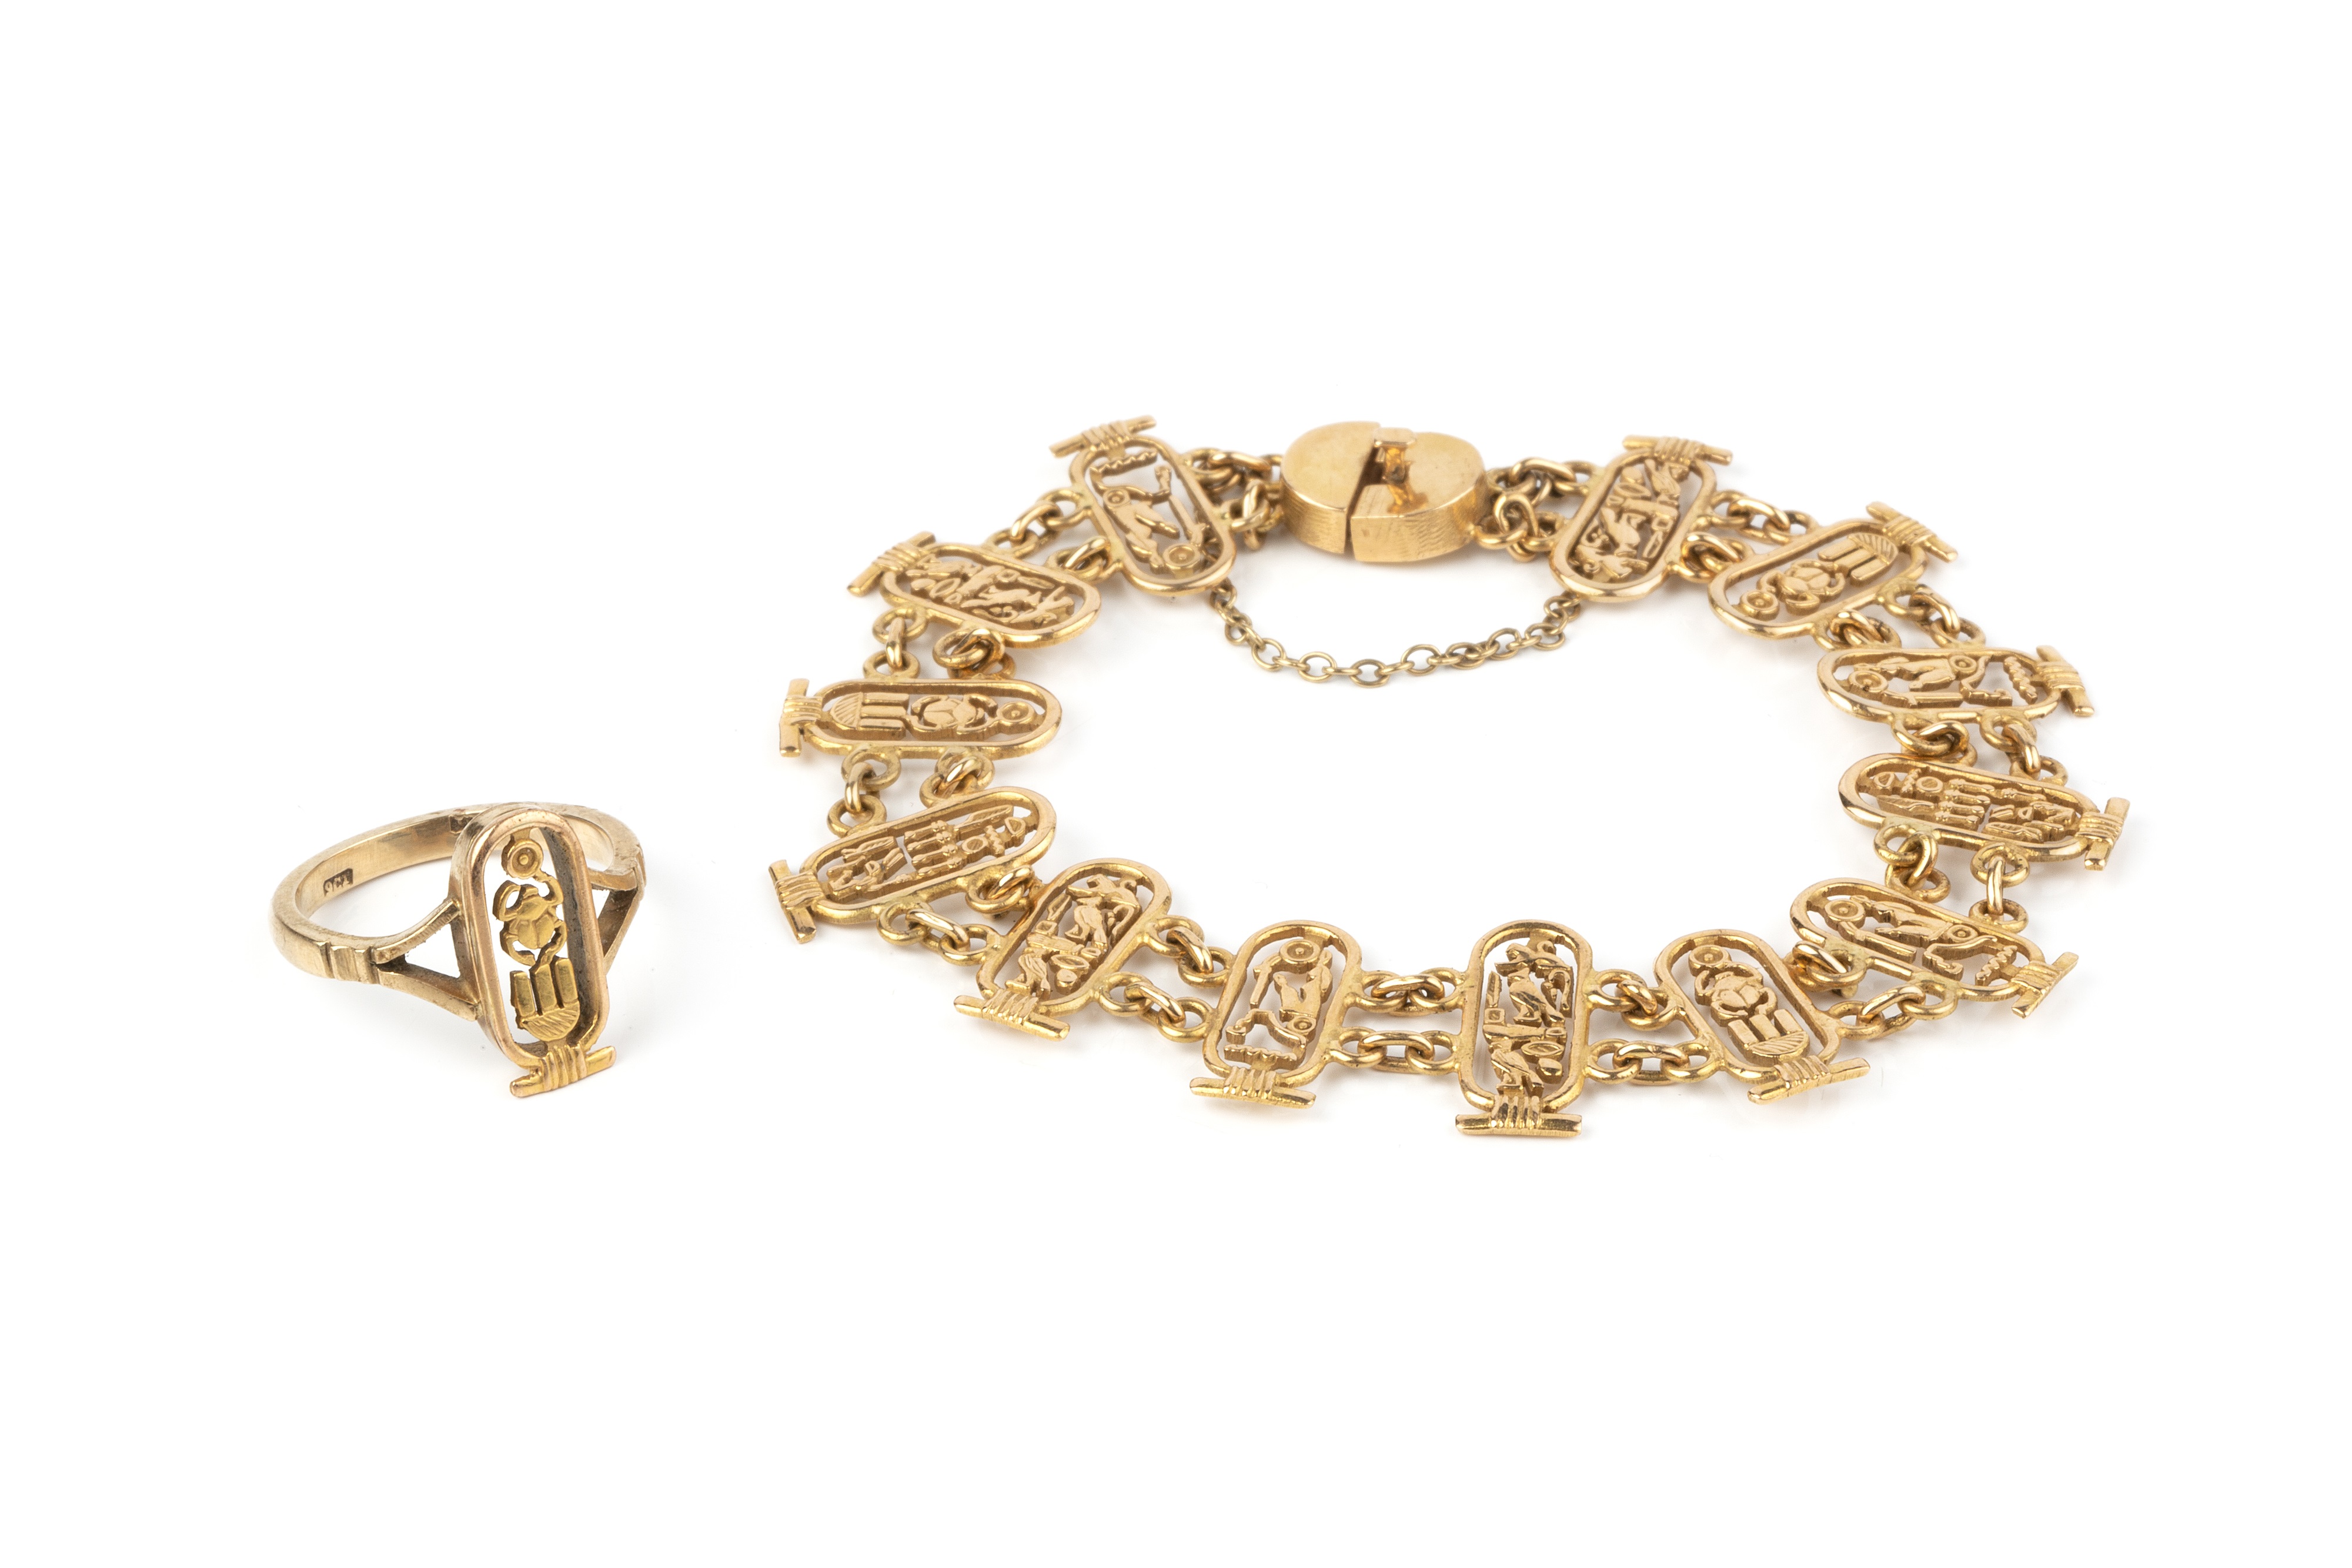 99% Ladies Gold Bracelets, 25gm at best price in Kolkata | ID: 2852035367591